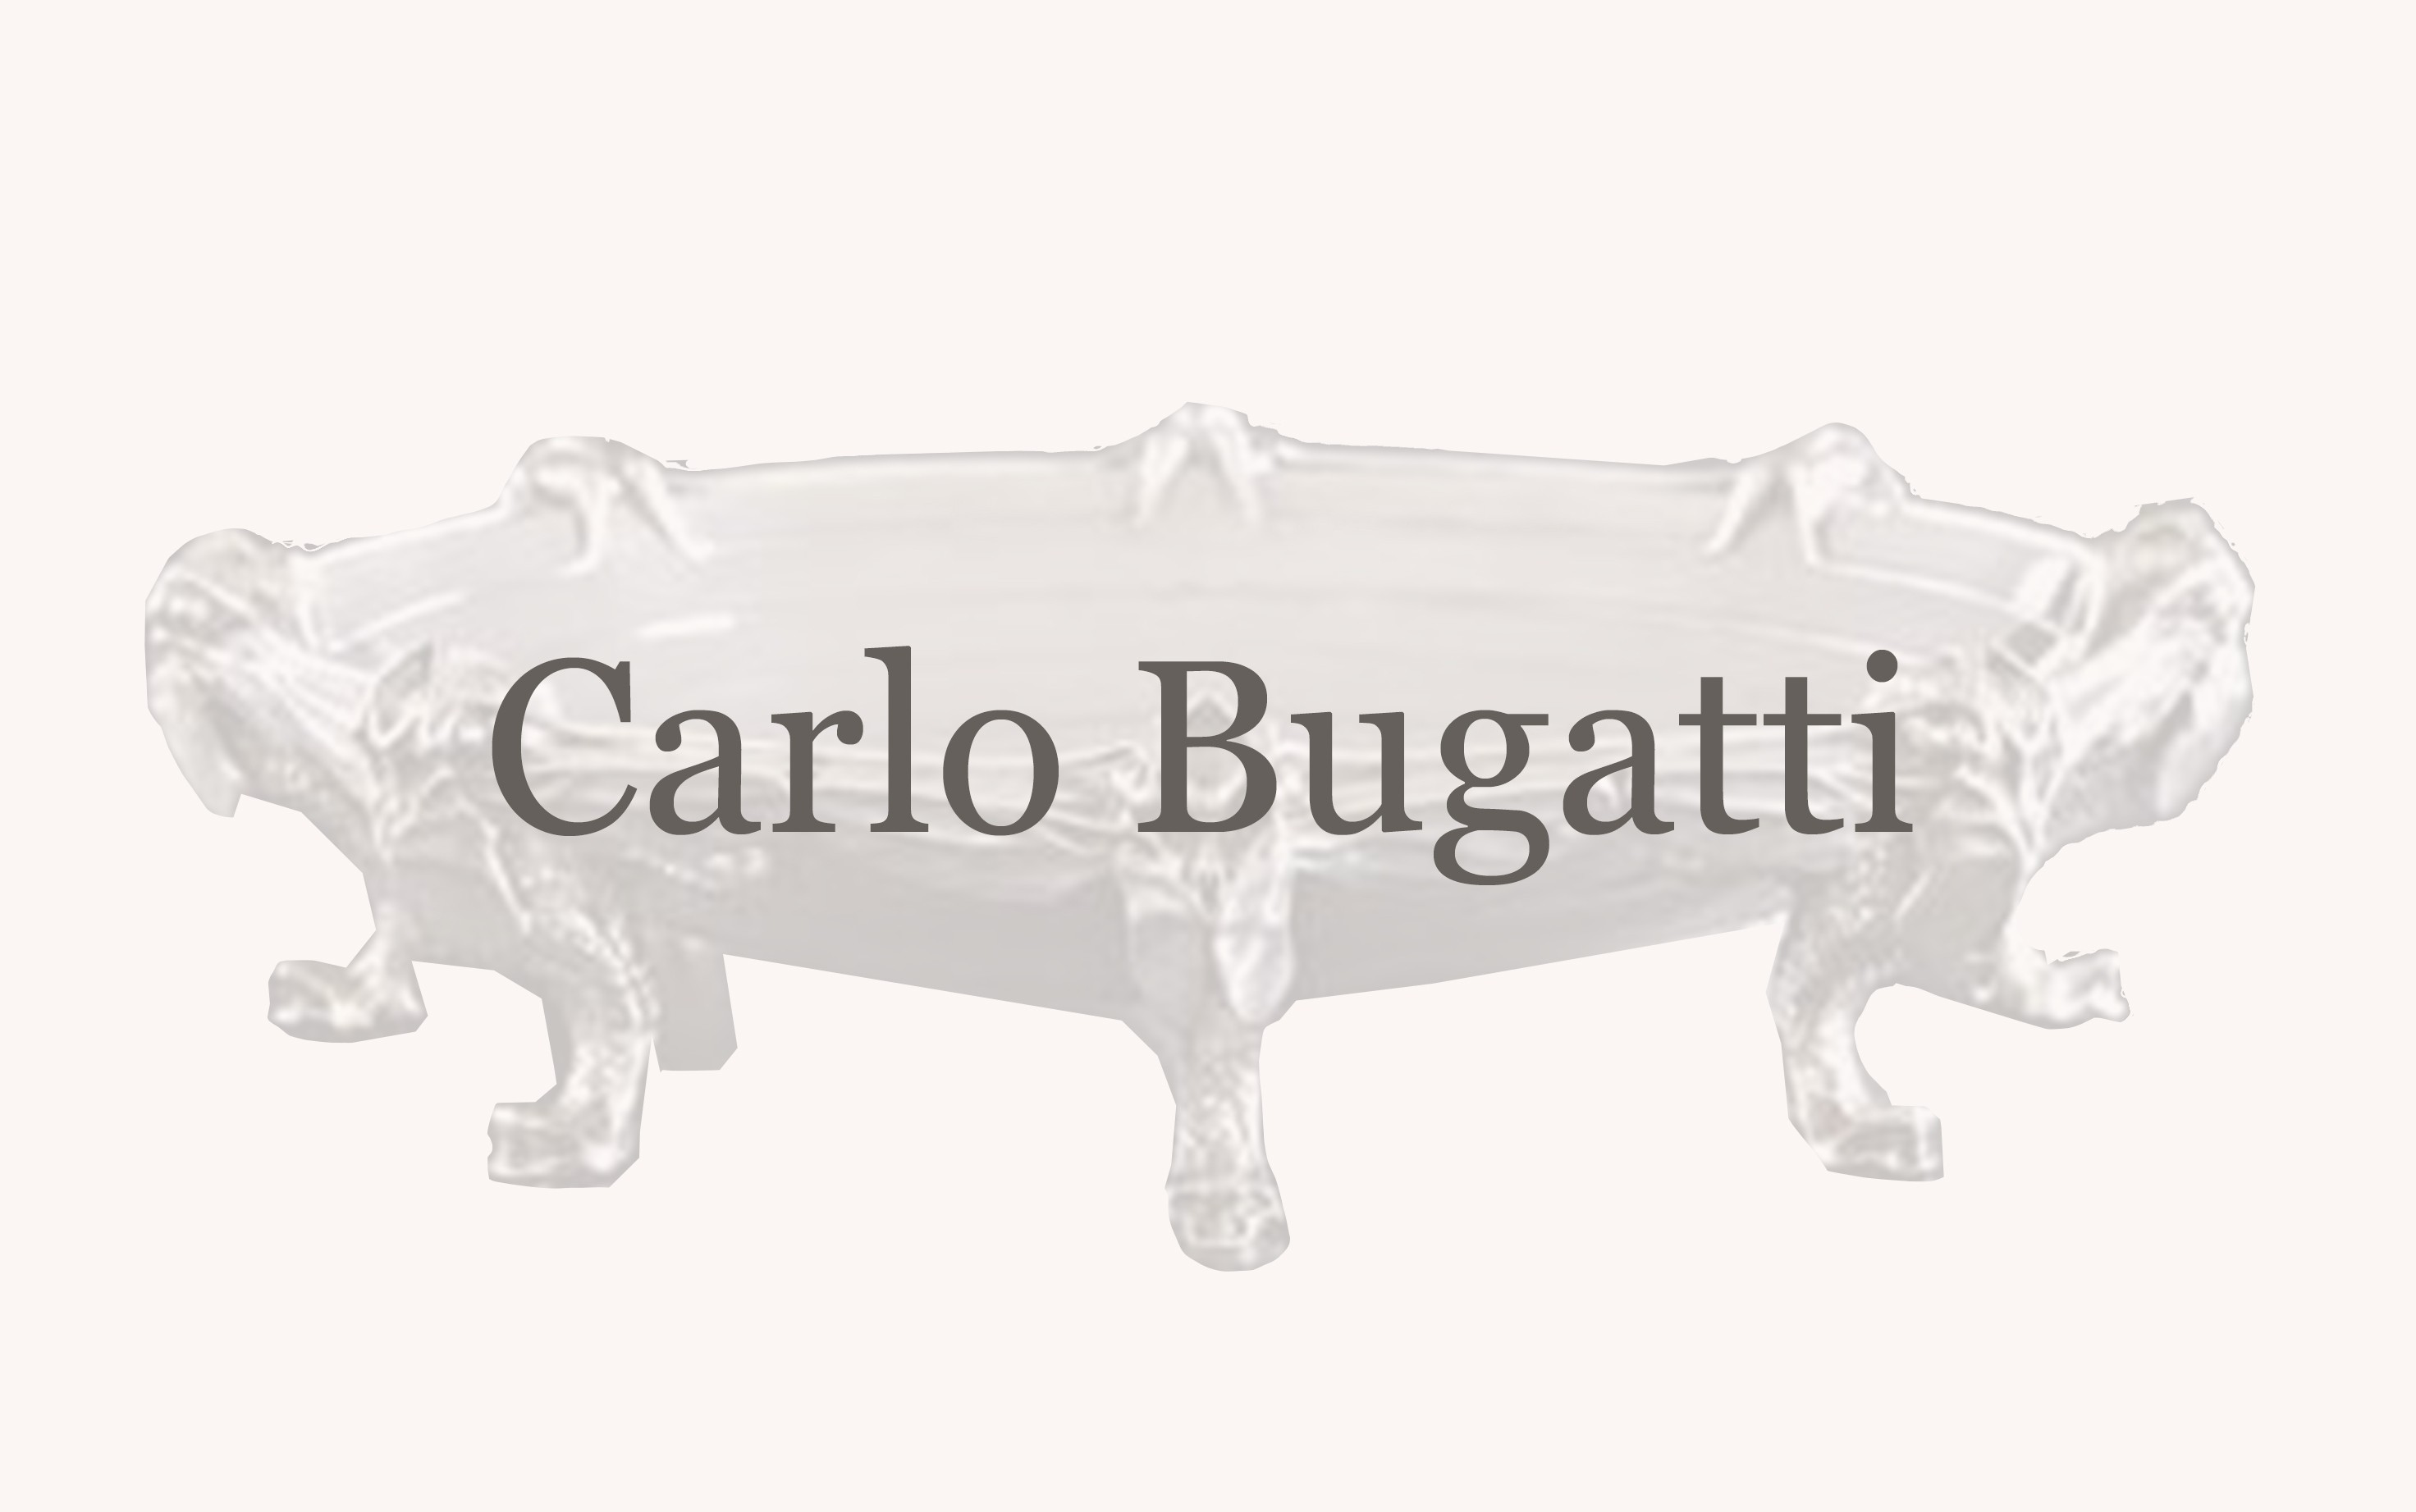 Carlo Bugatti